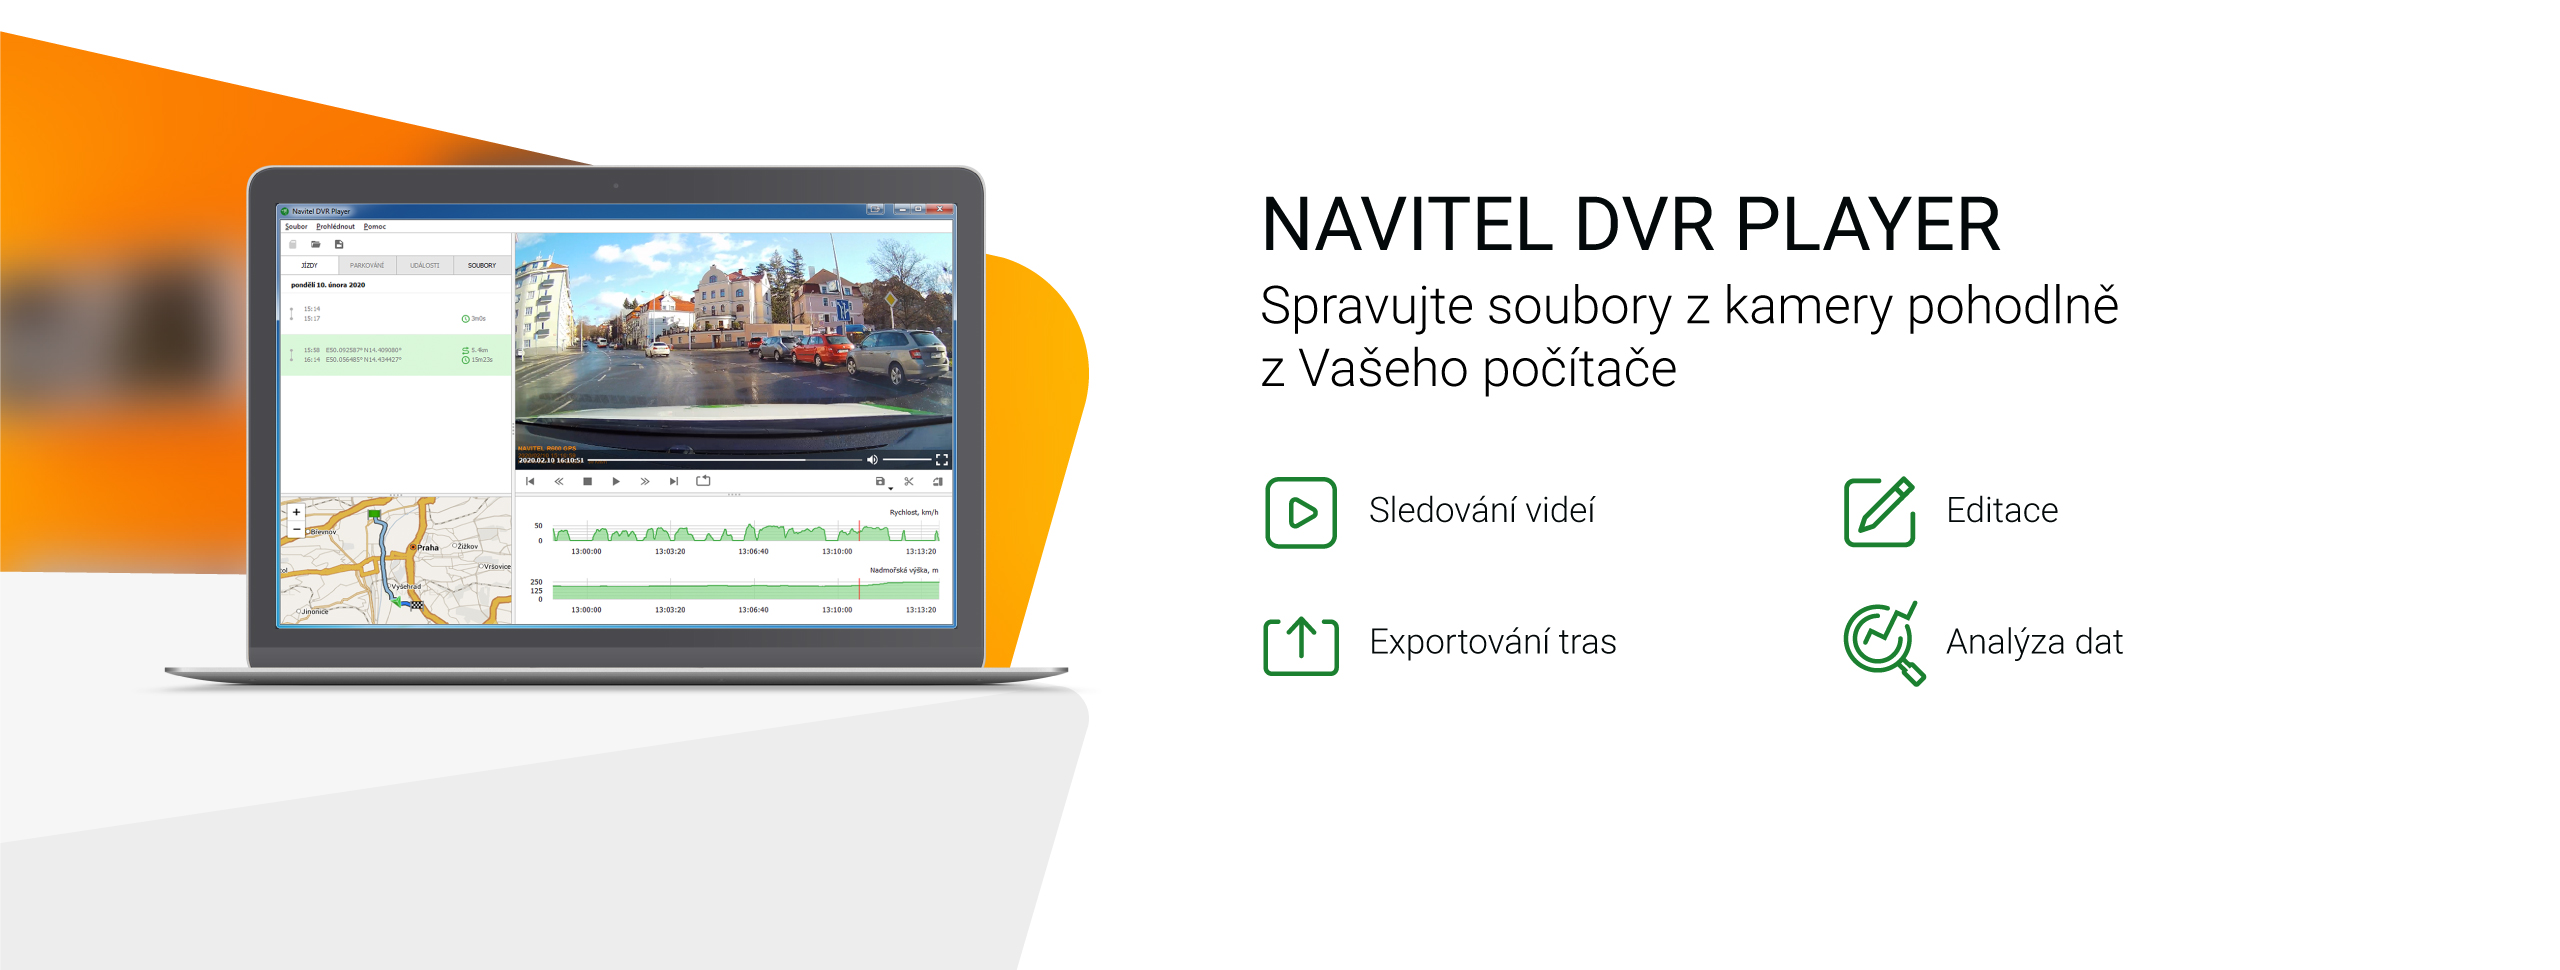 NAVITEL představuje program Navitel DVR Player